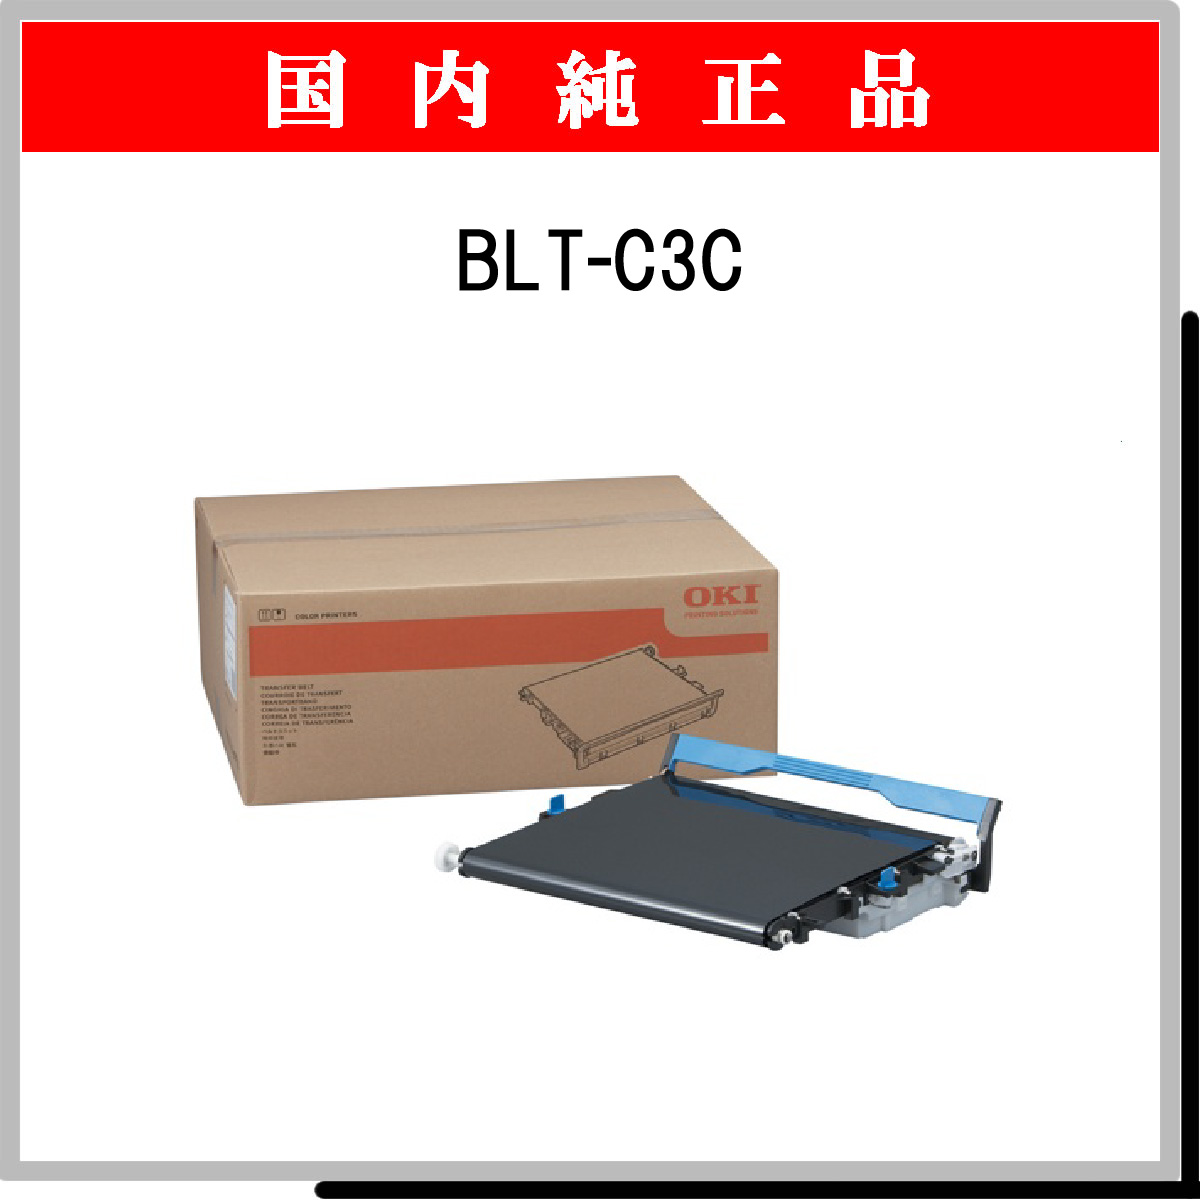 ベルトユニット(C610dn/C711dn用) BLT-C4G インクカートリッジ、トナー